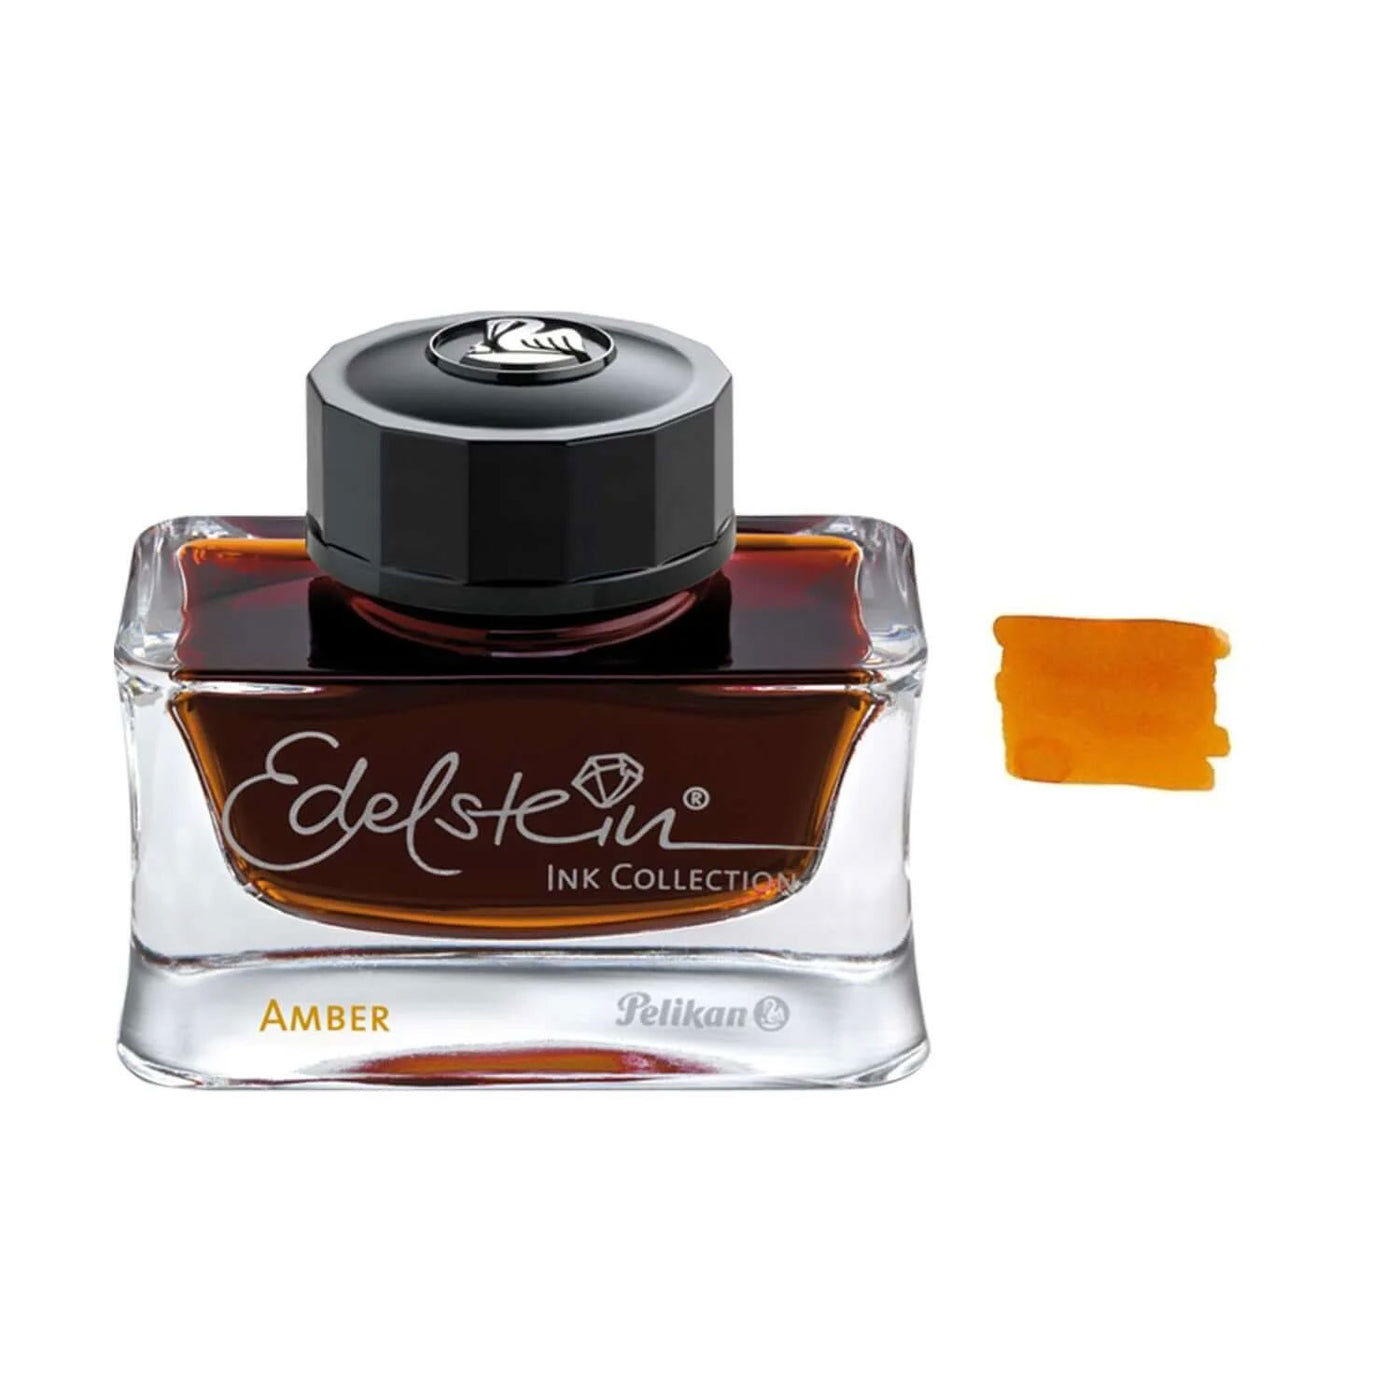 Pelikan Edelstein Ink Bottle, Amber (Brown) - 50ml